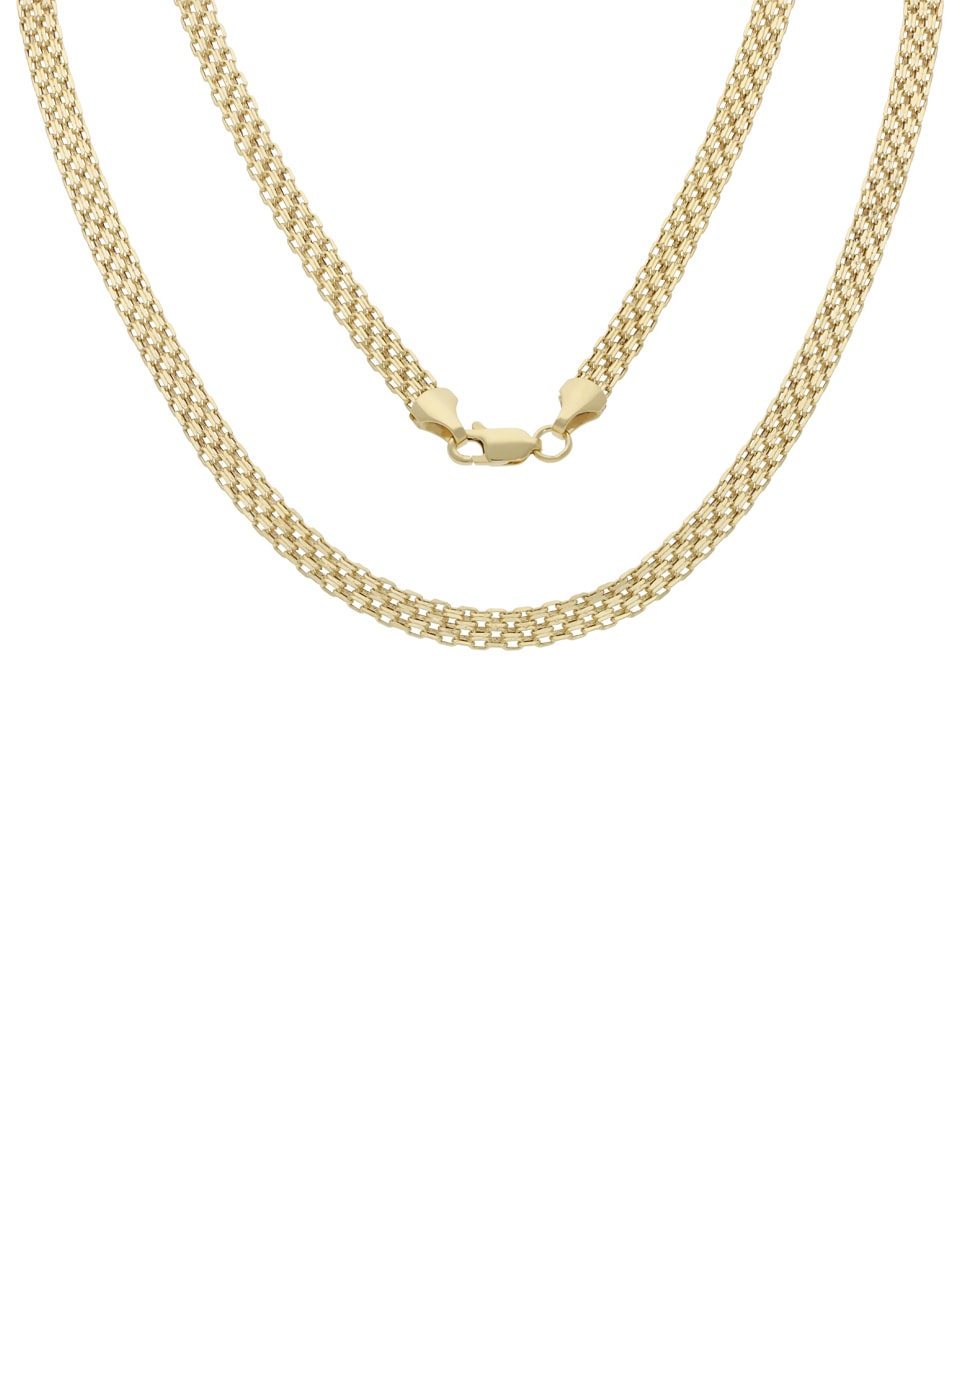 Goldkette für Damen online kaufen bei Universal